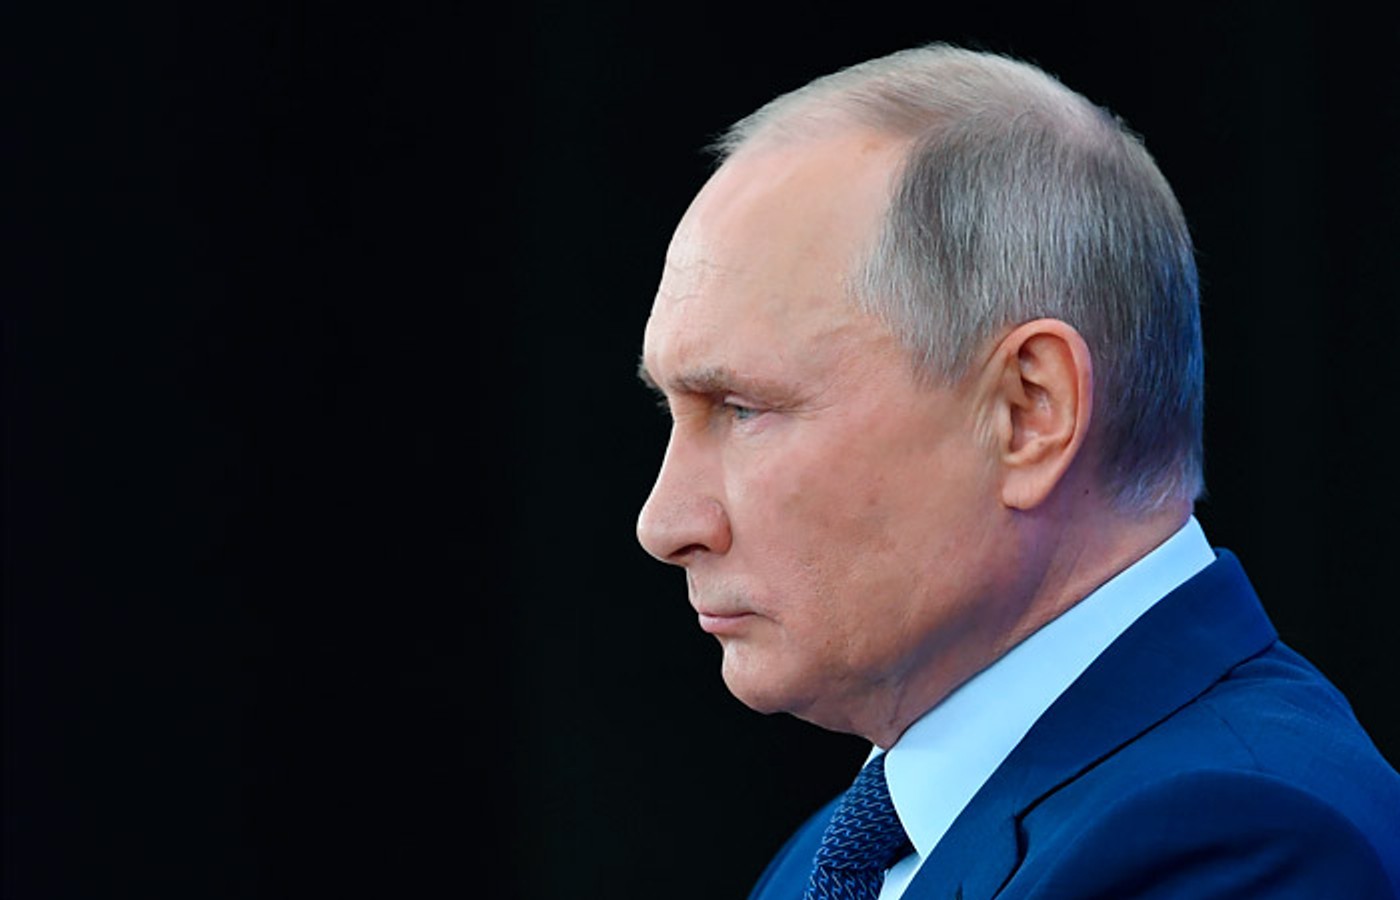 Схвалення діяльності Путіна серед москвичів знизилося до мінімуму з 2013 року